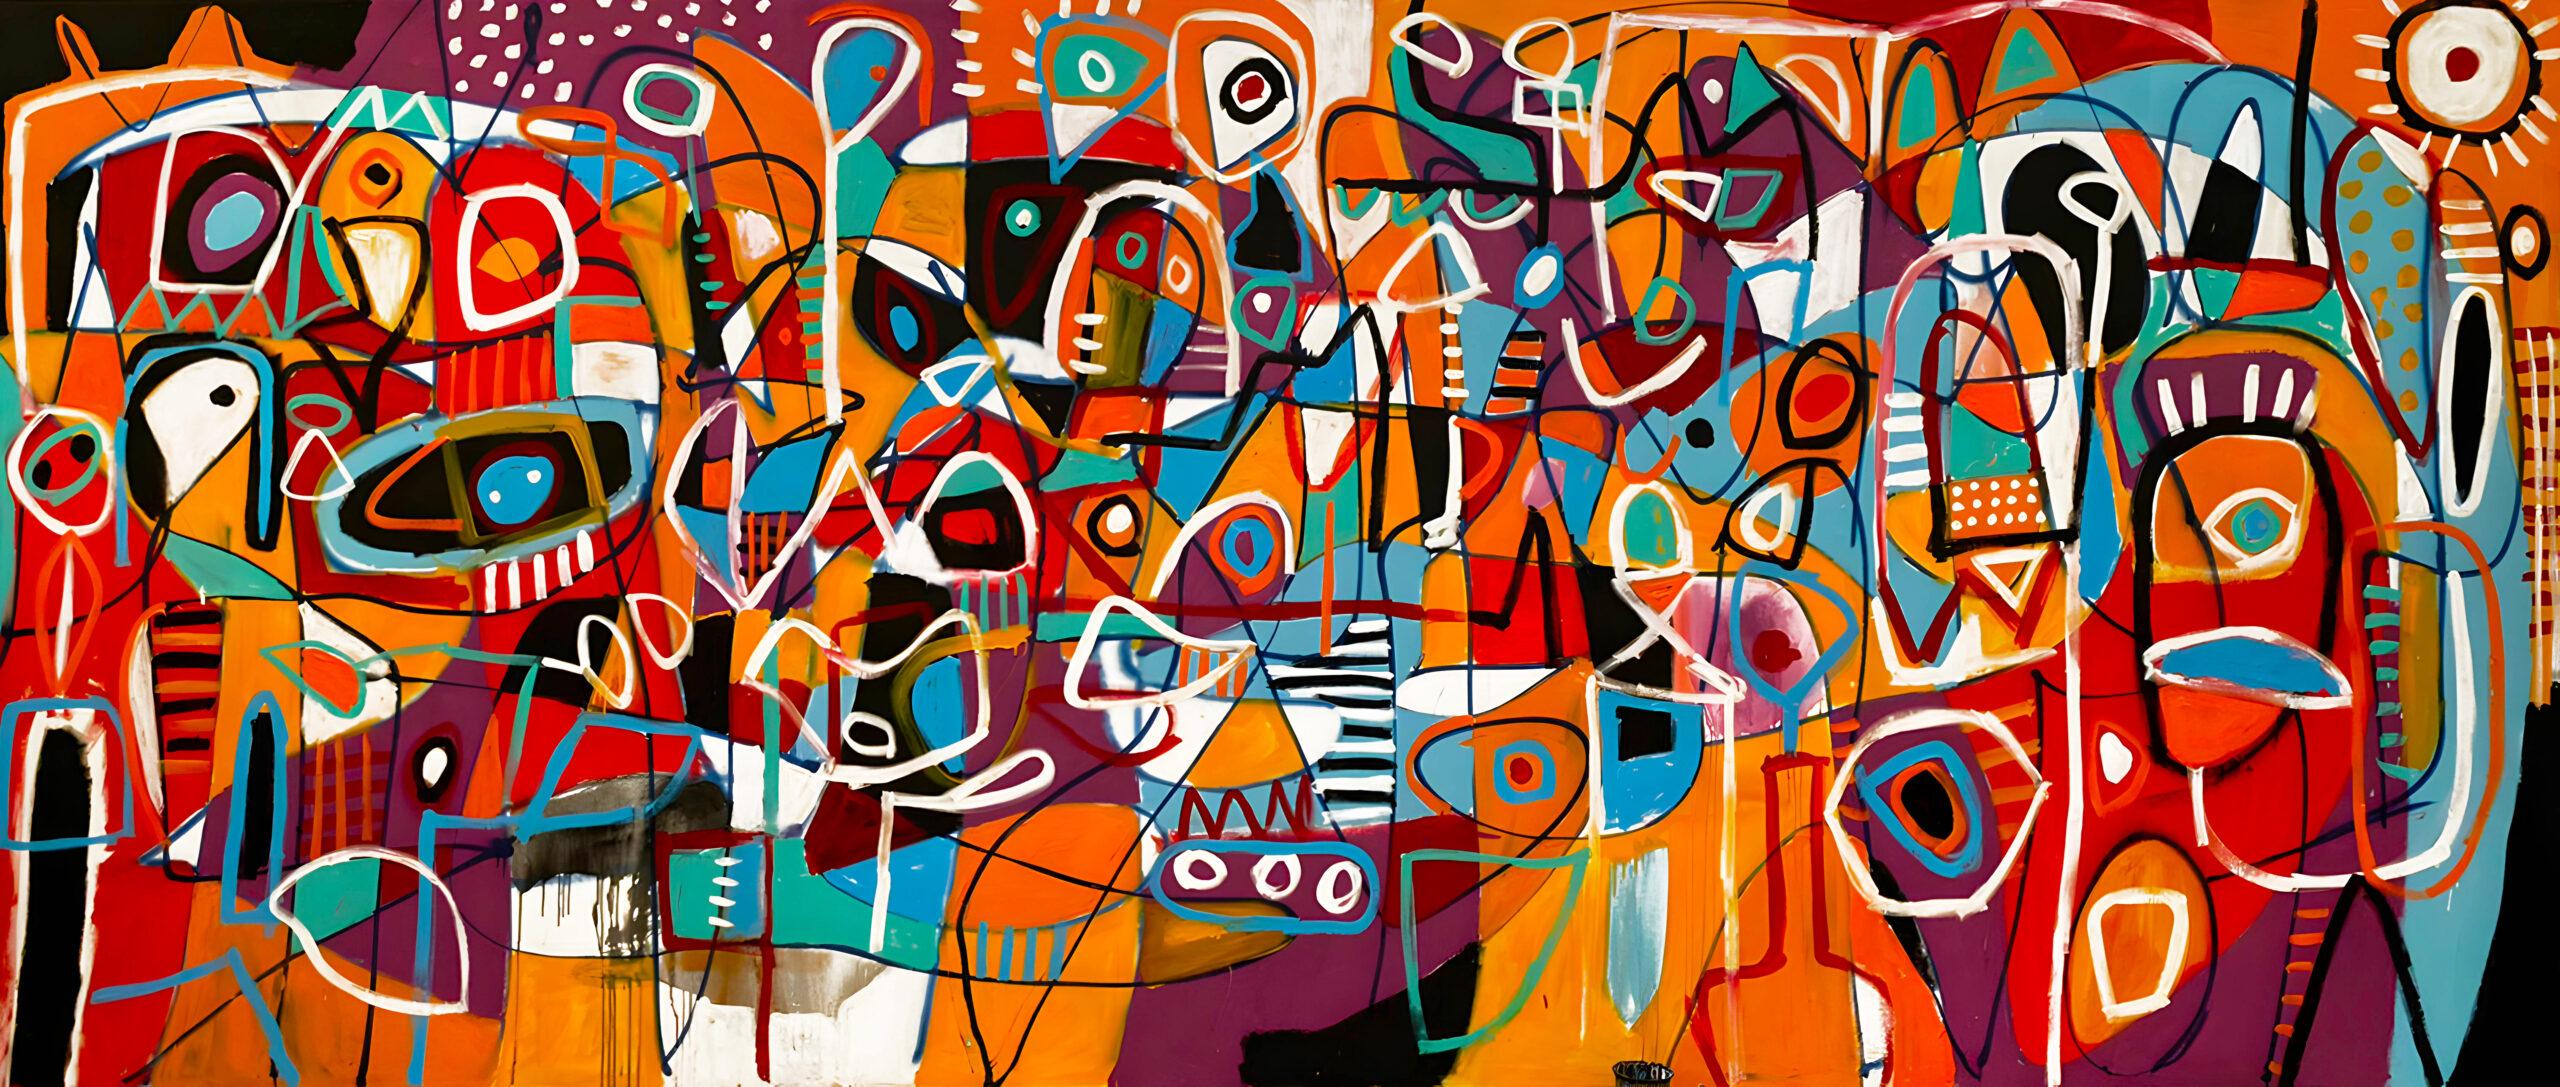 Abstract Painting Enrique Pichardo - En Naranja, Art contemporain, Peinture abstraite, 21ème siècle